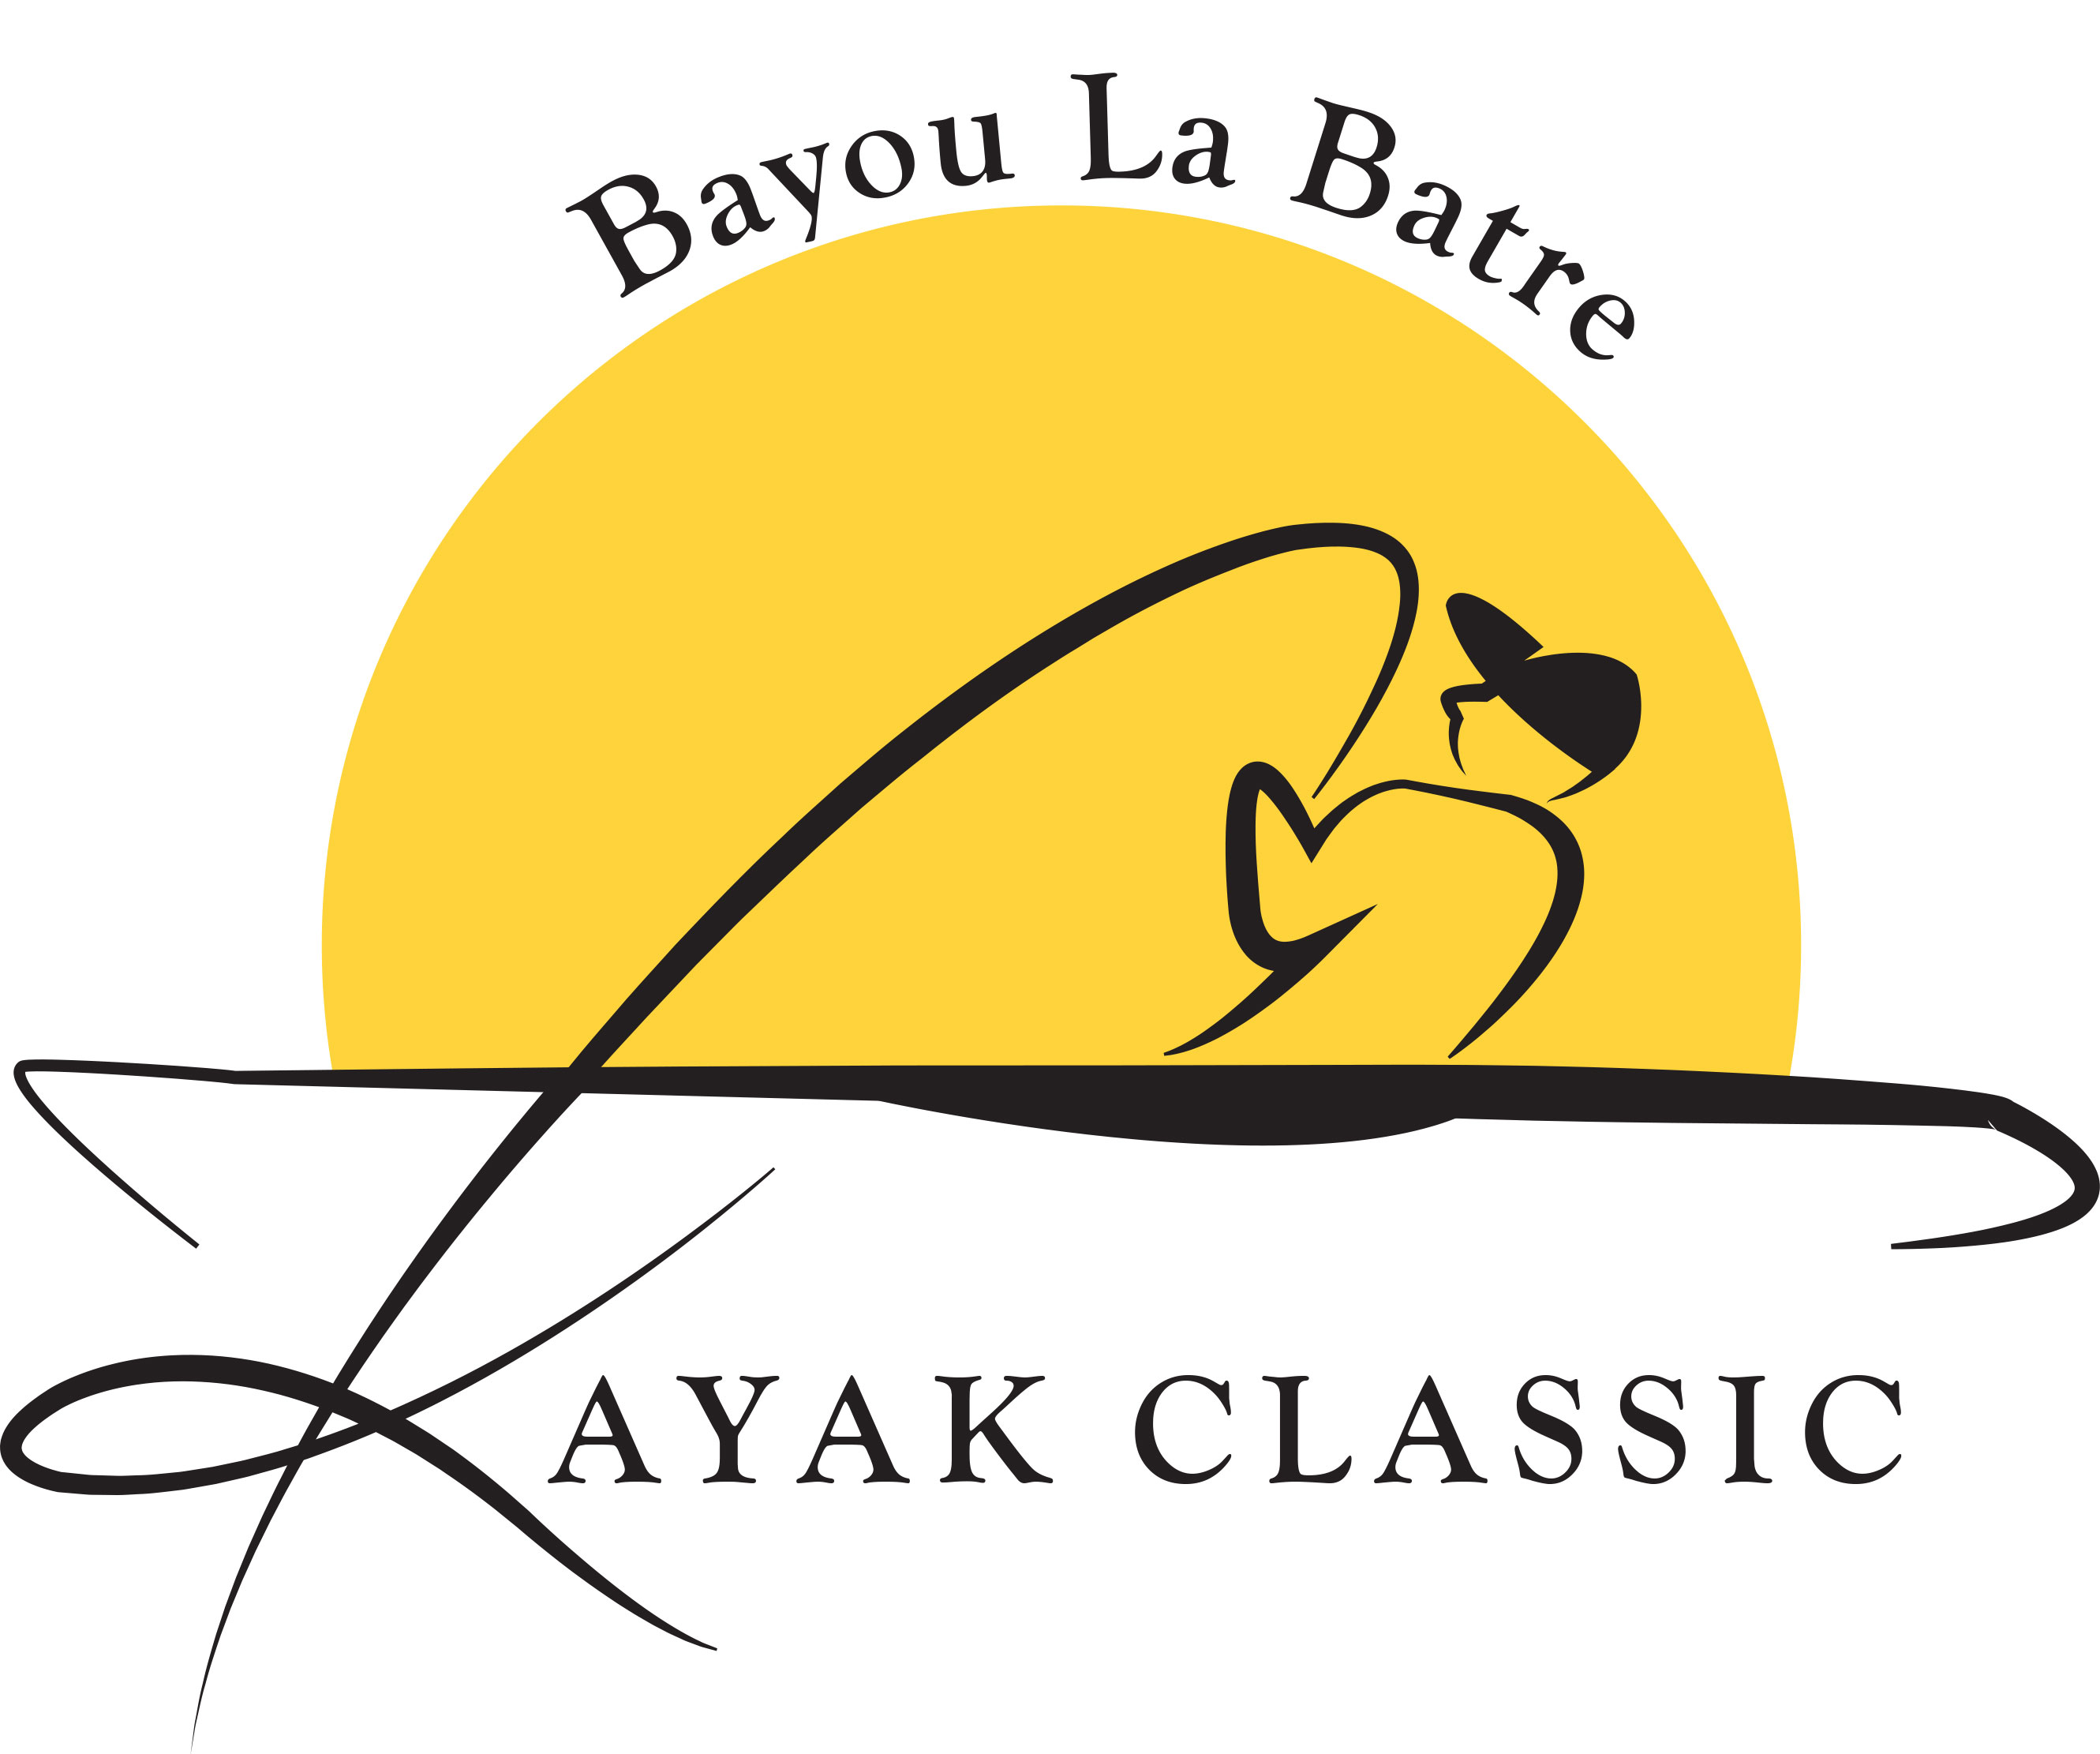 Kayak Classic Logo